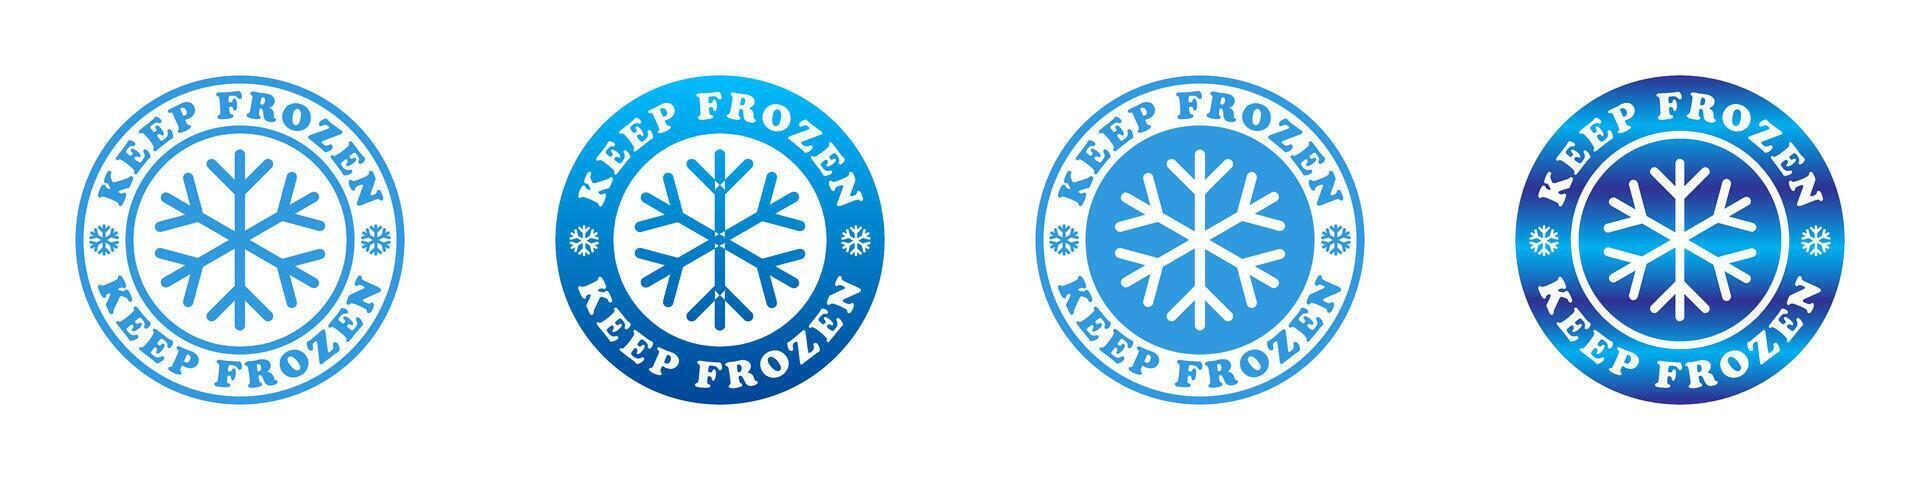 Keep frozen icon set. Vector illustration.